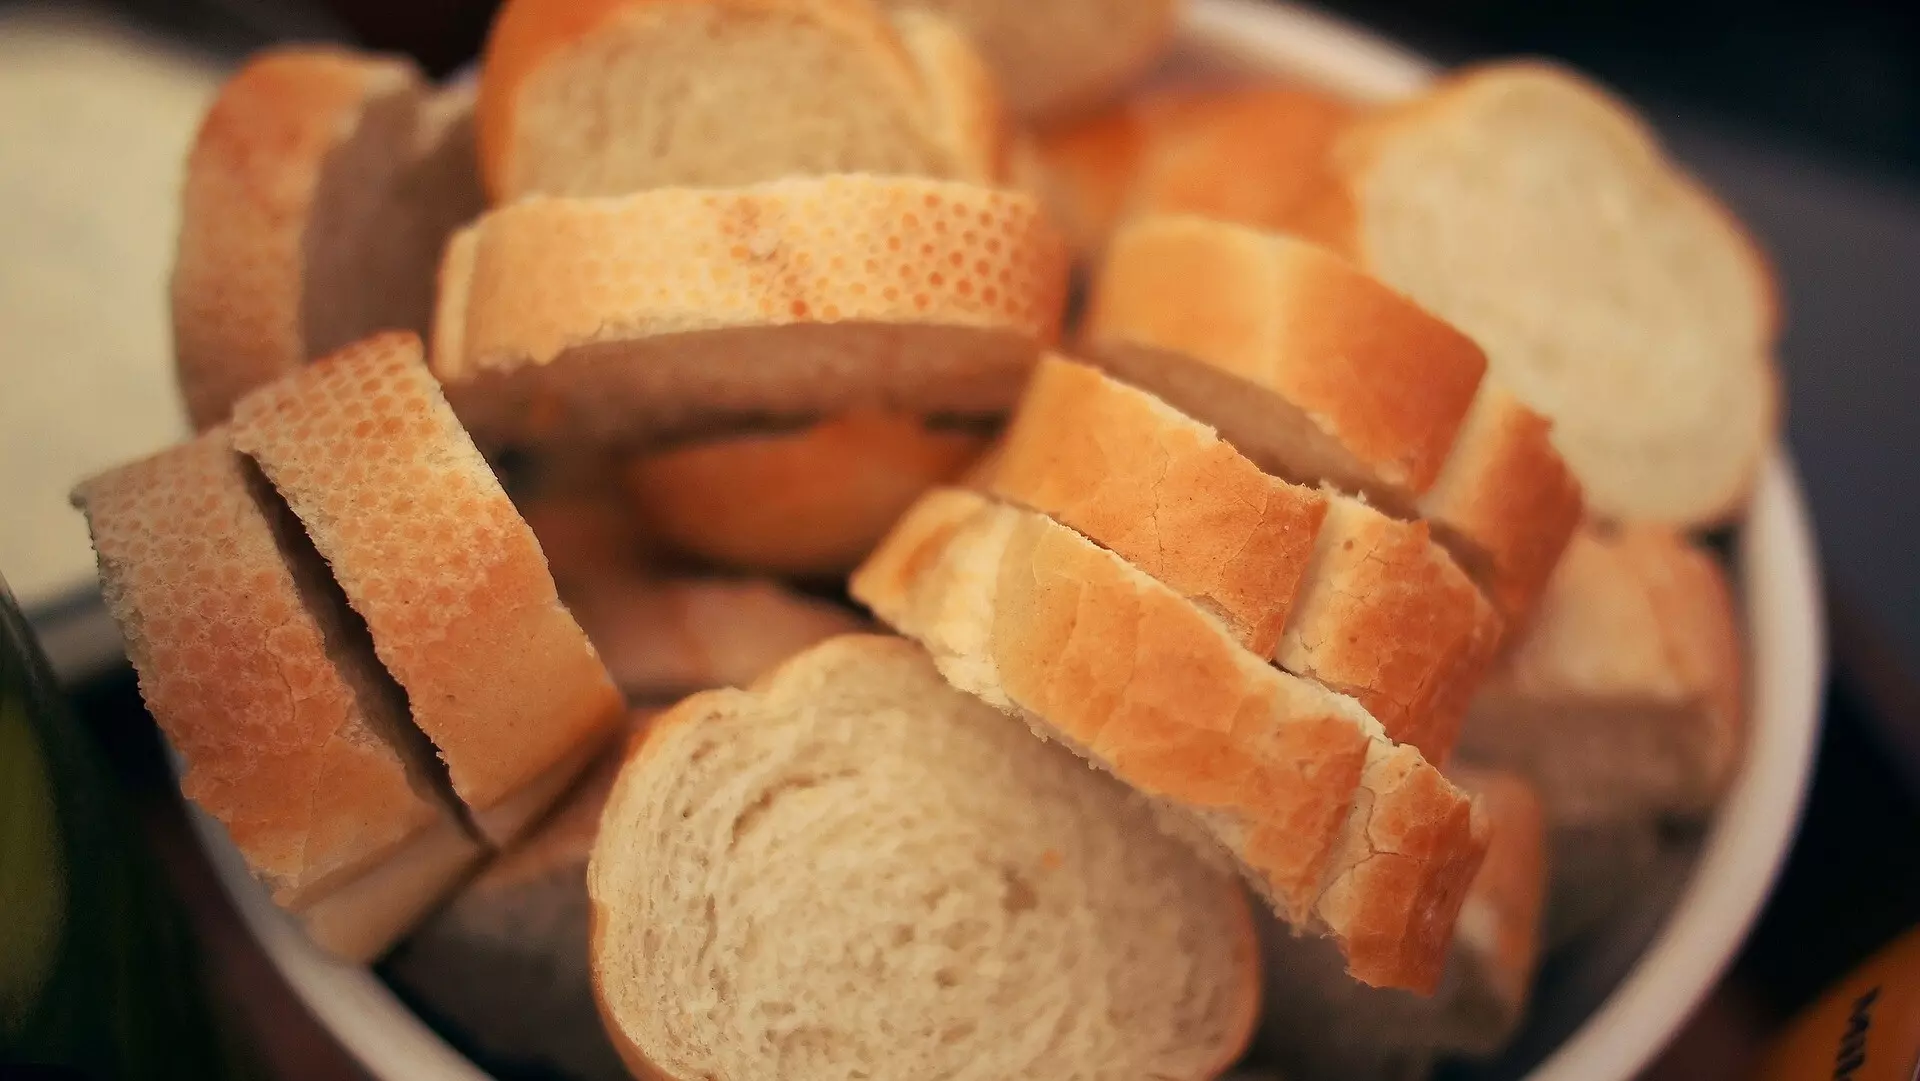 Вкусный белый хлеб в хлебопечке